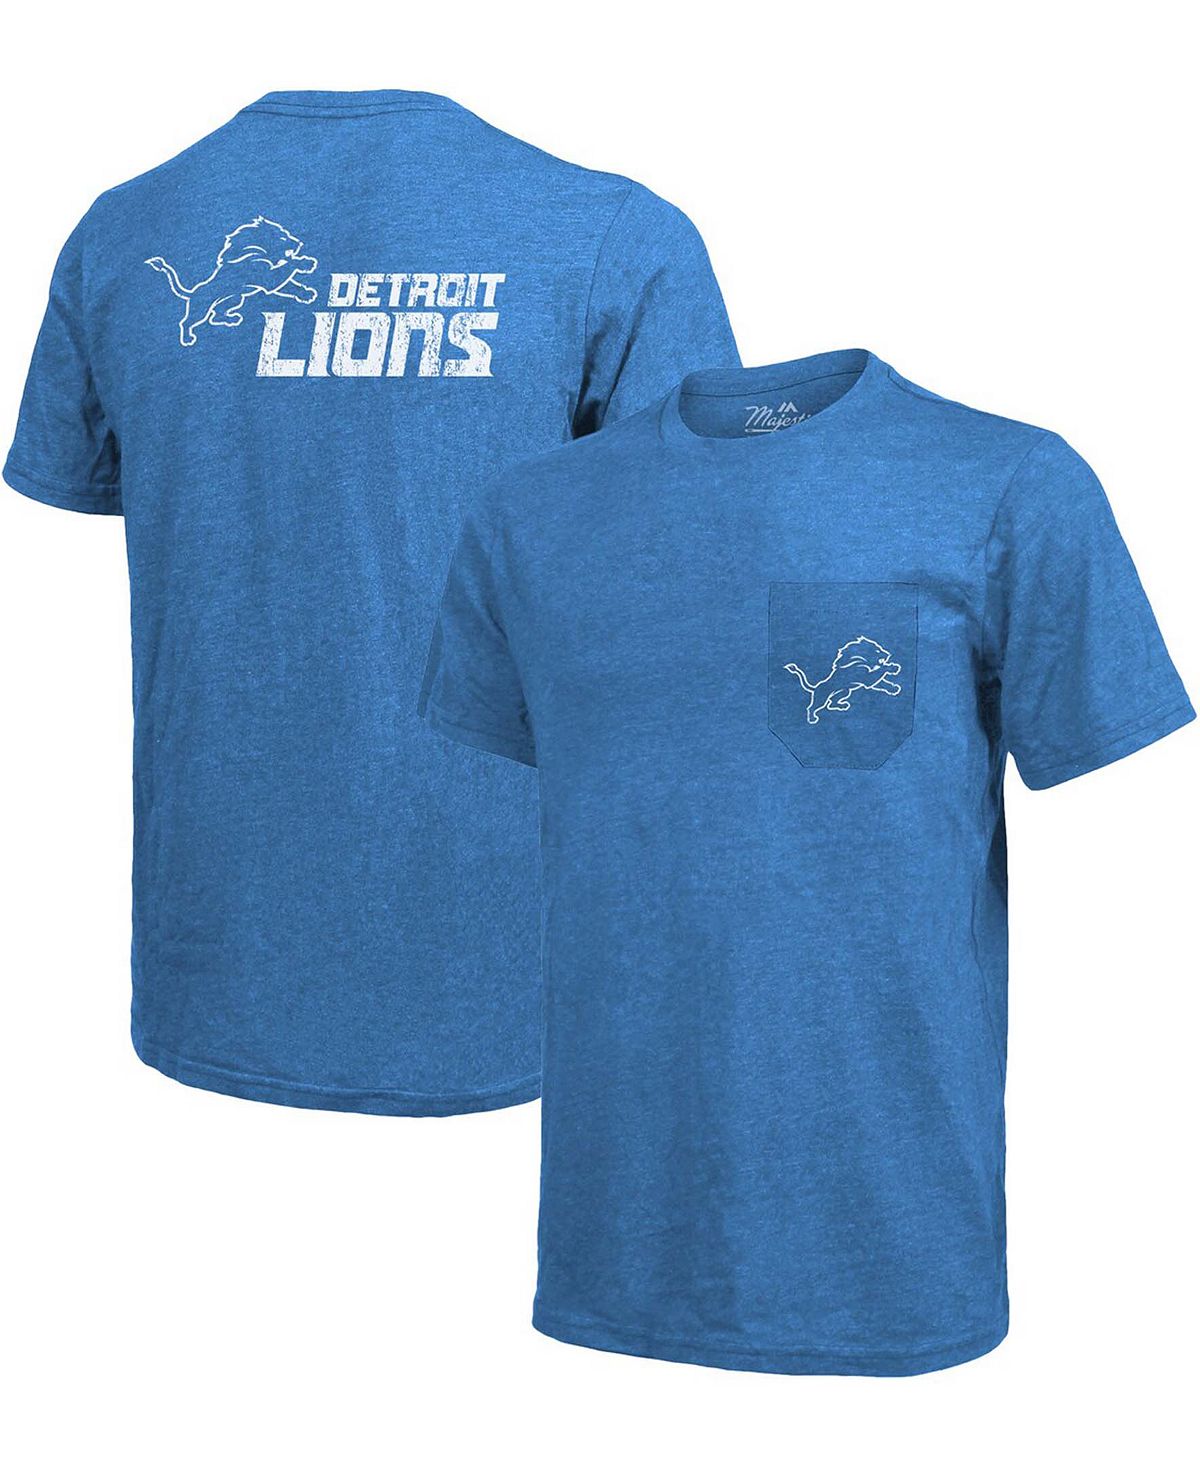 Футболка detroit lions tri-blend pocket - синий Majestic, синий футболка с карманами tri blend minnesota vikings threads фиолетовый с меланжем majestic